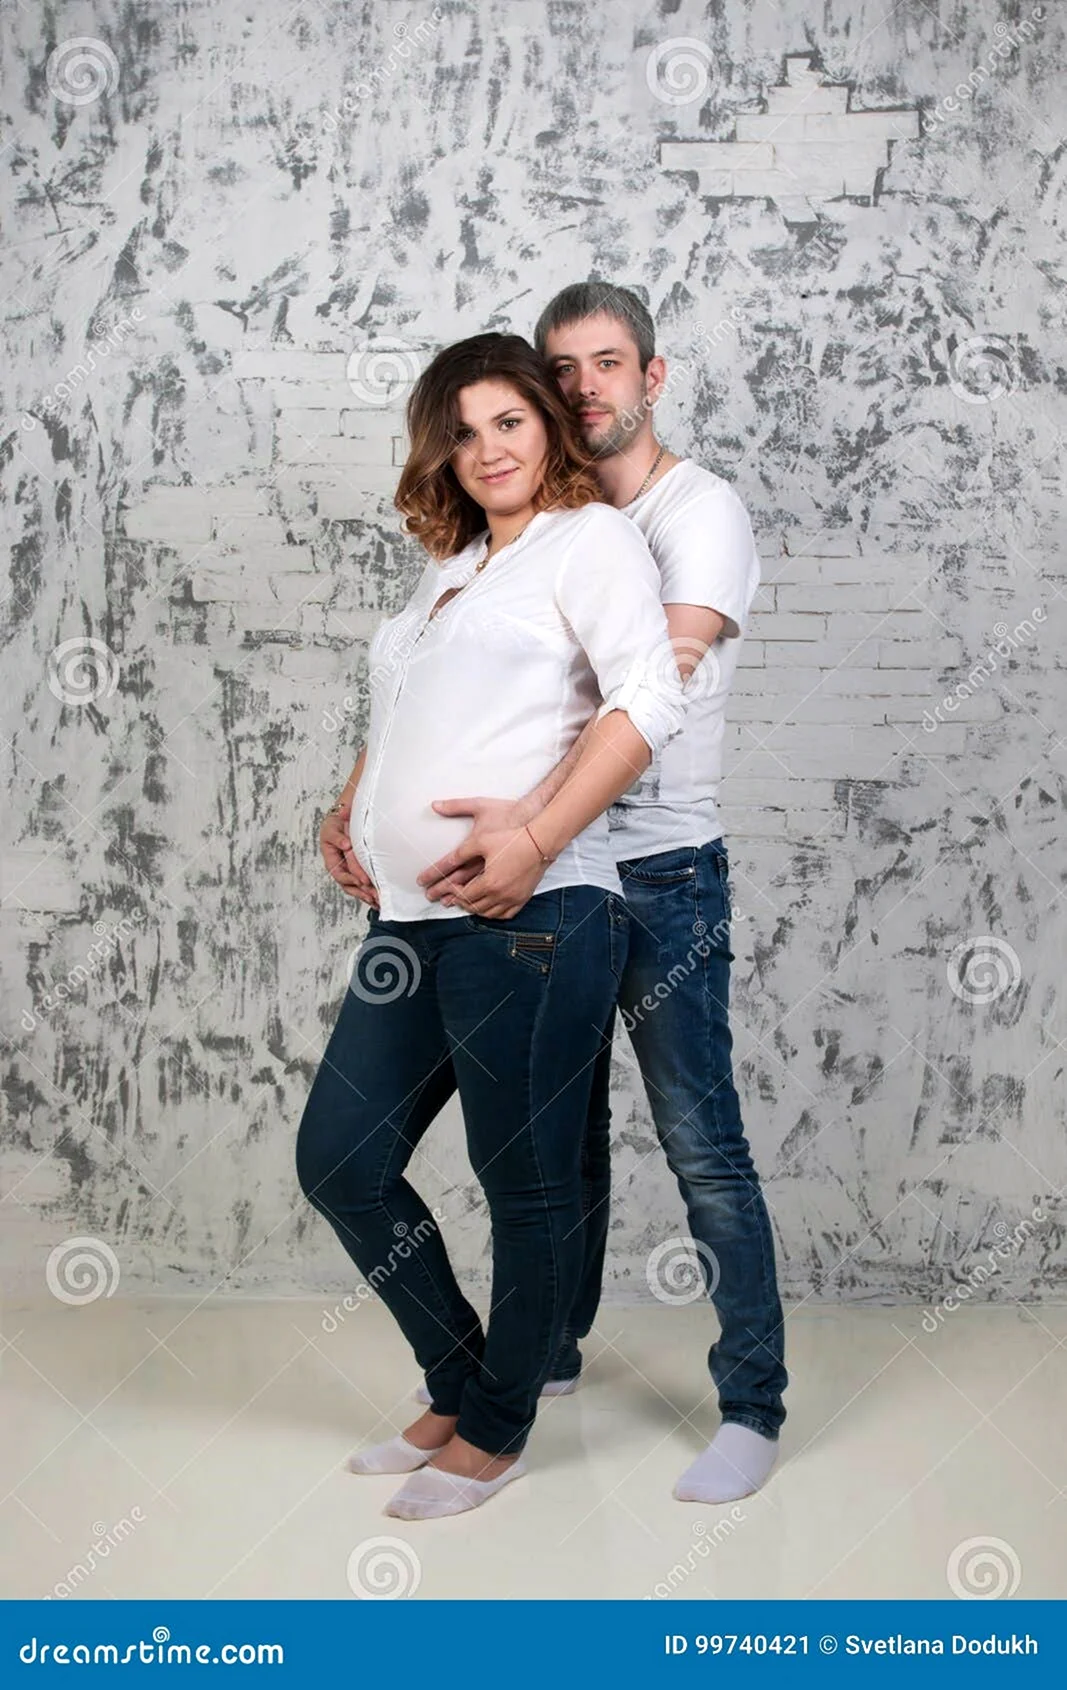 Беременная фотосессия в джинсах и белых